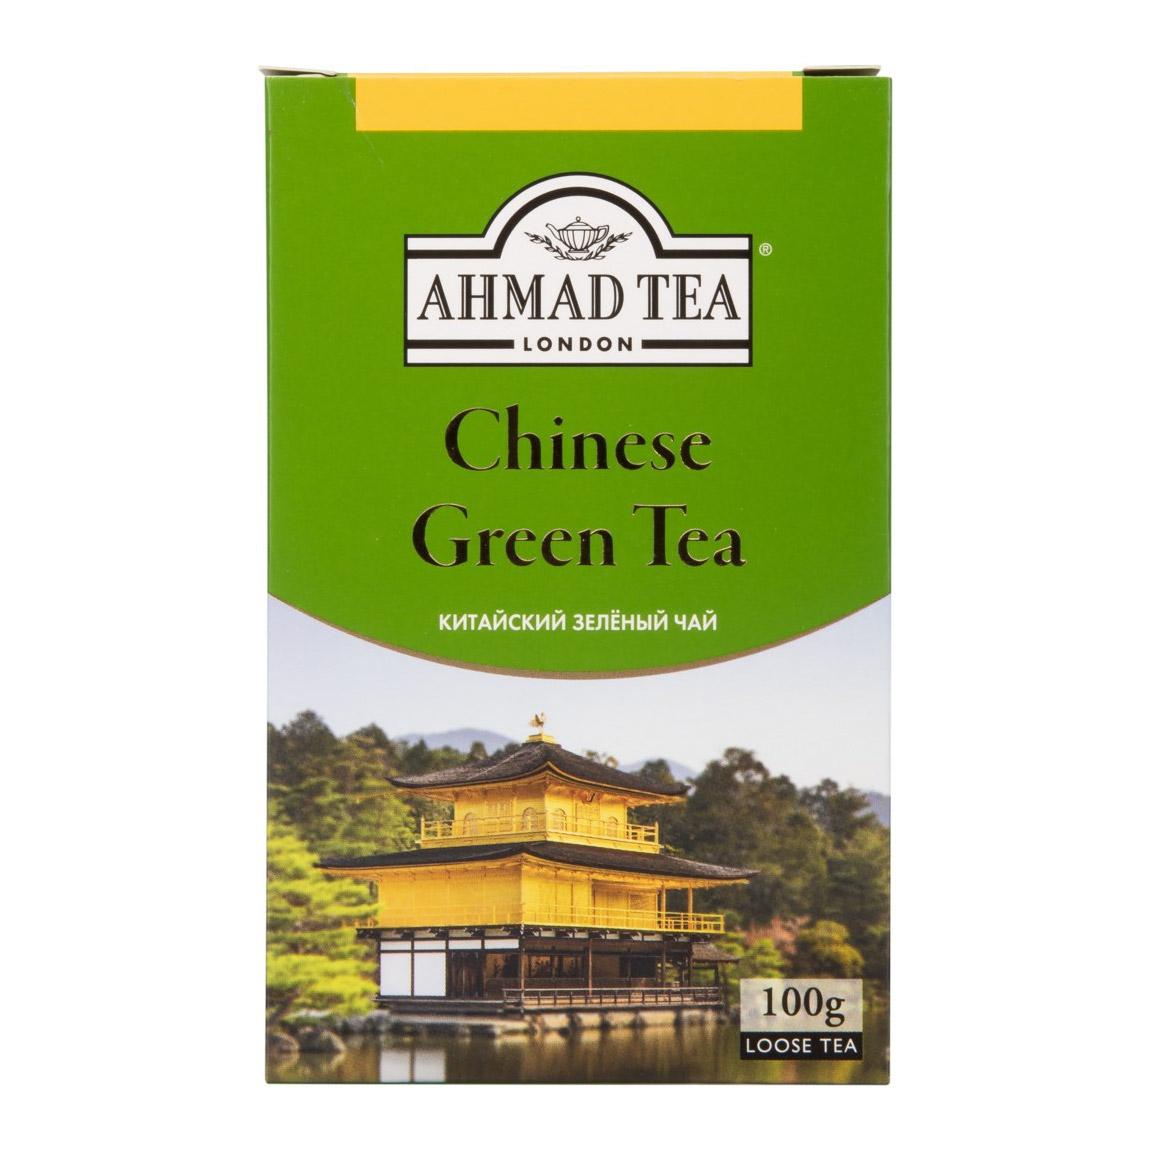 Чай Ahmad Tea Chinese Green зеленый 100 г чай ahmad tea зеленый 100 г